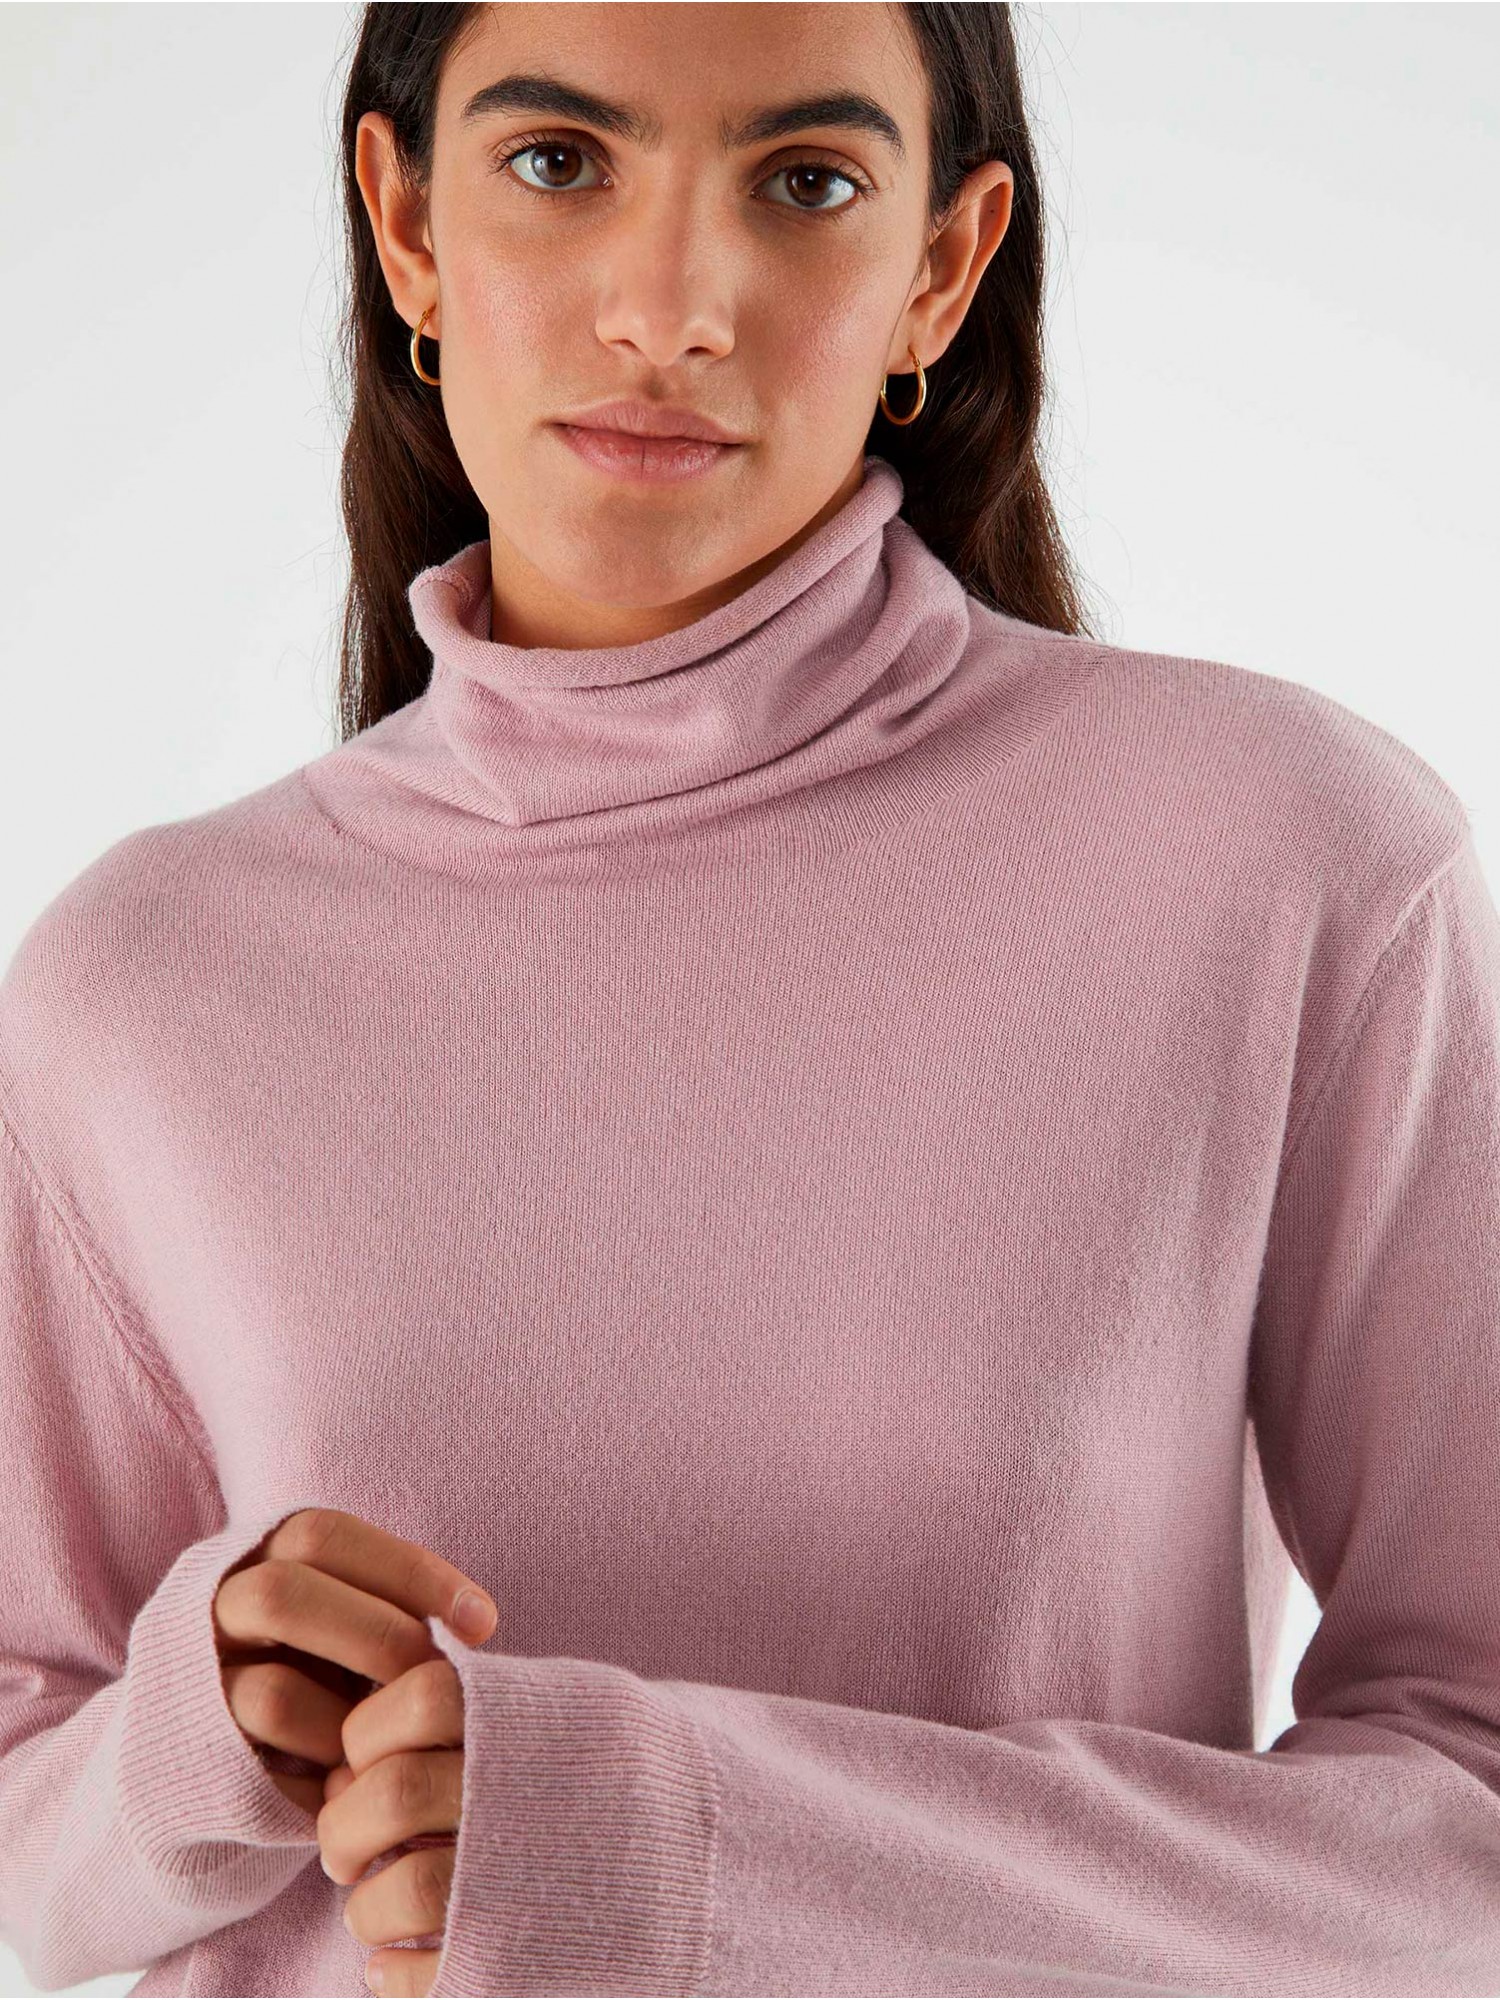 Comprar Jersey de cuello alto para mujer, suéter holgado de punto